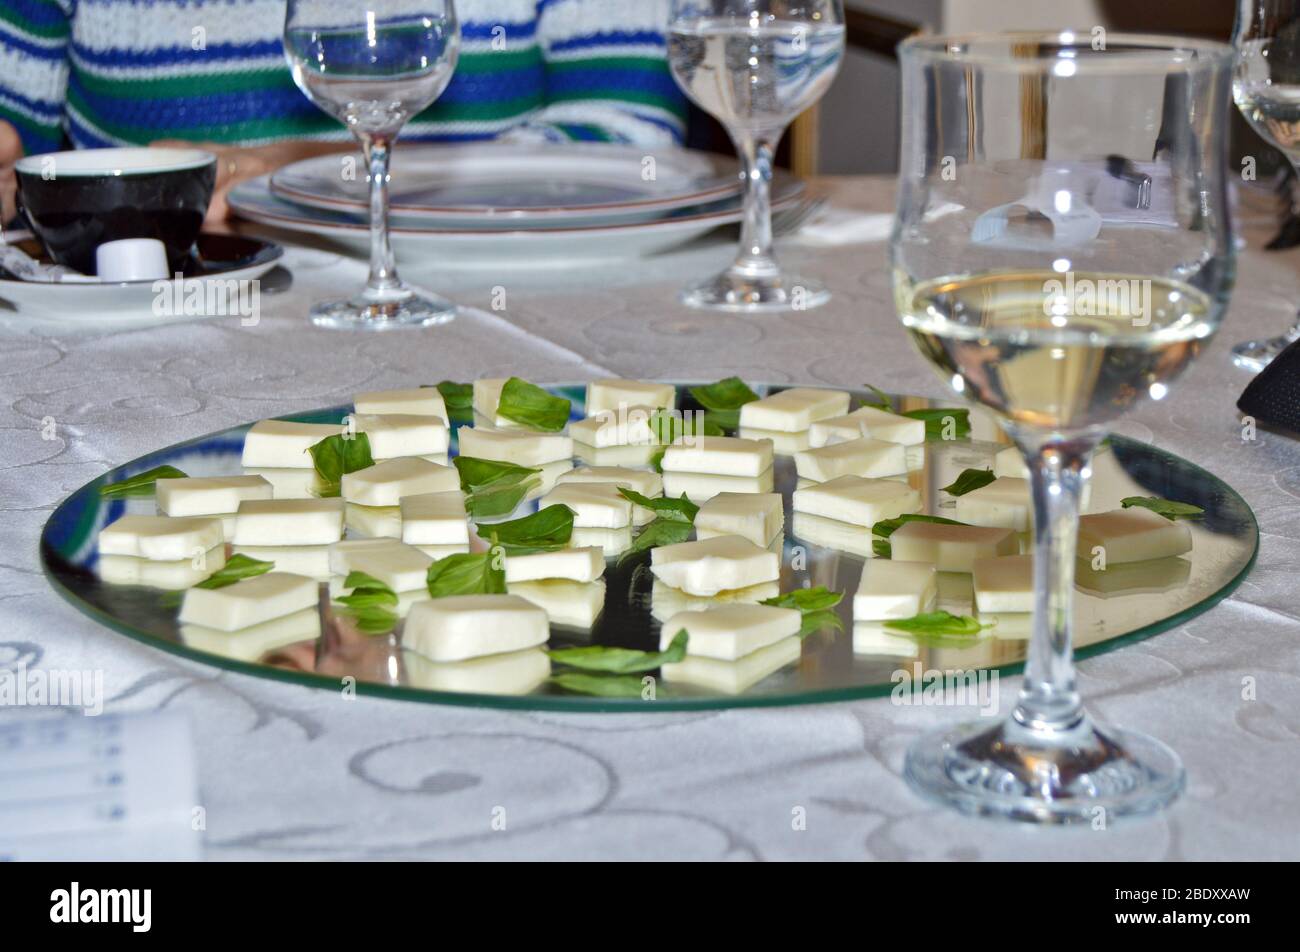 Ambiente elegante al tavolo del ristorante, primo piano di bicchieri di vino bianco pronti per la degustazione accanto al piatto a specchio con fette di mozzarella fresca Foto Stock